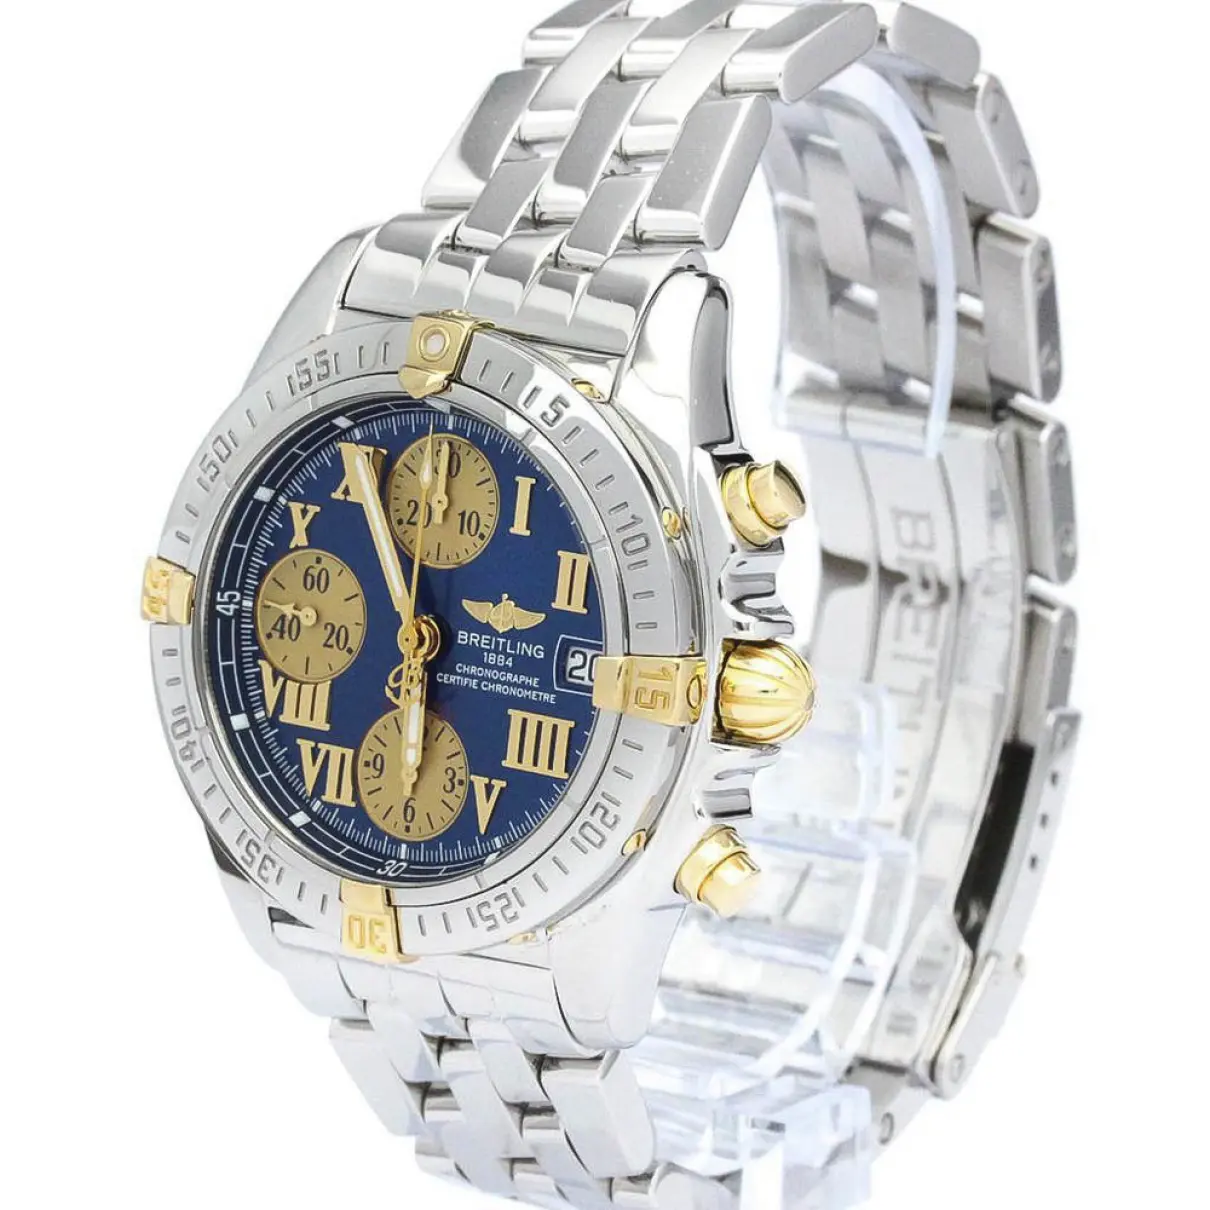 Buy Breitling Watch online